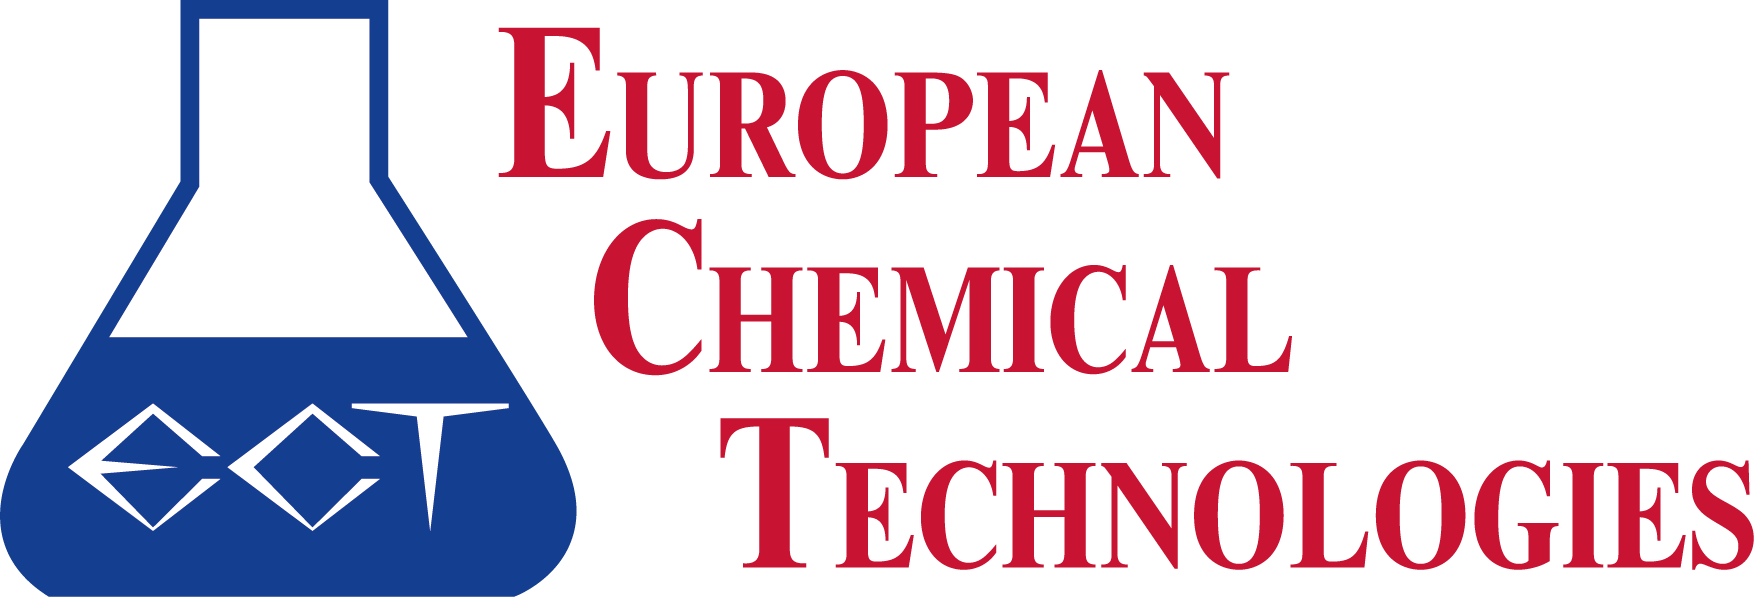 European Chemical Technologies